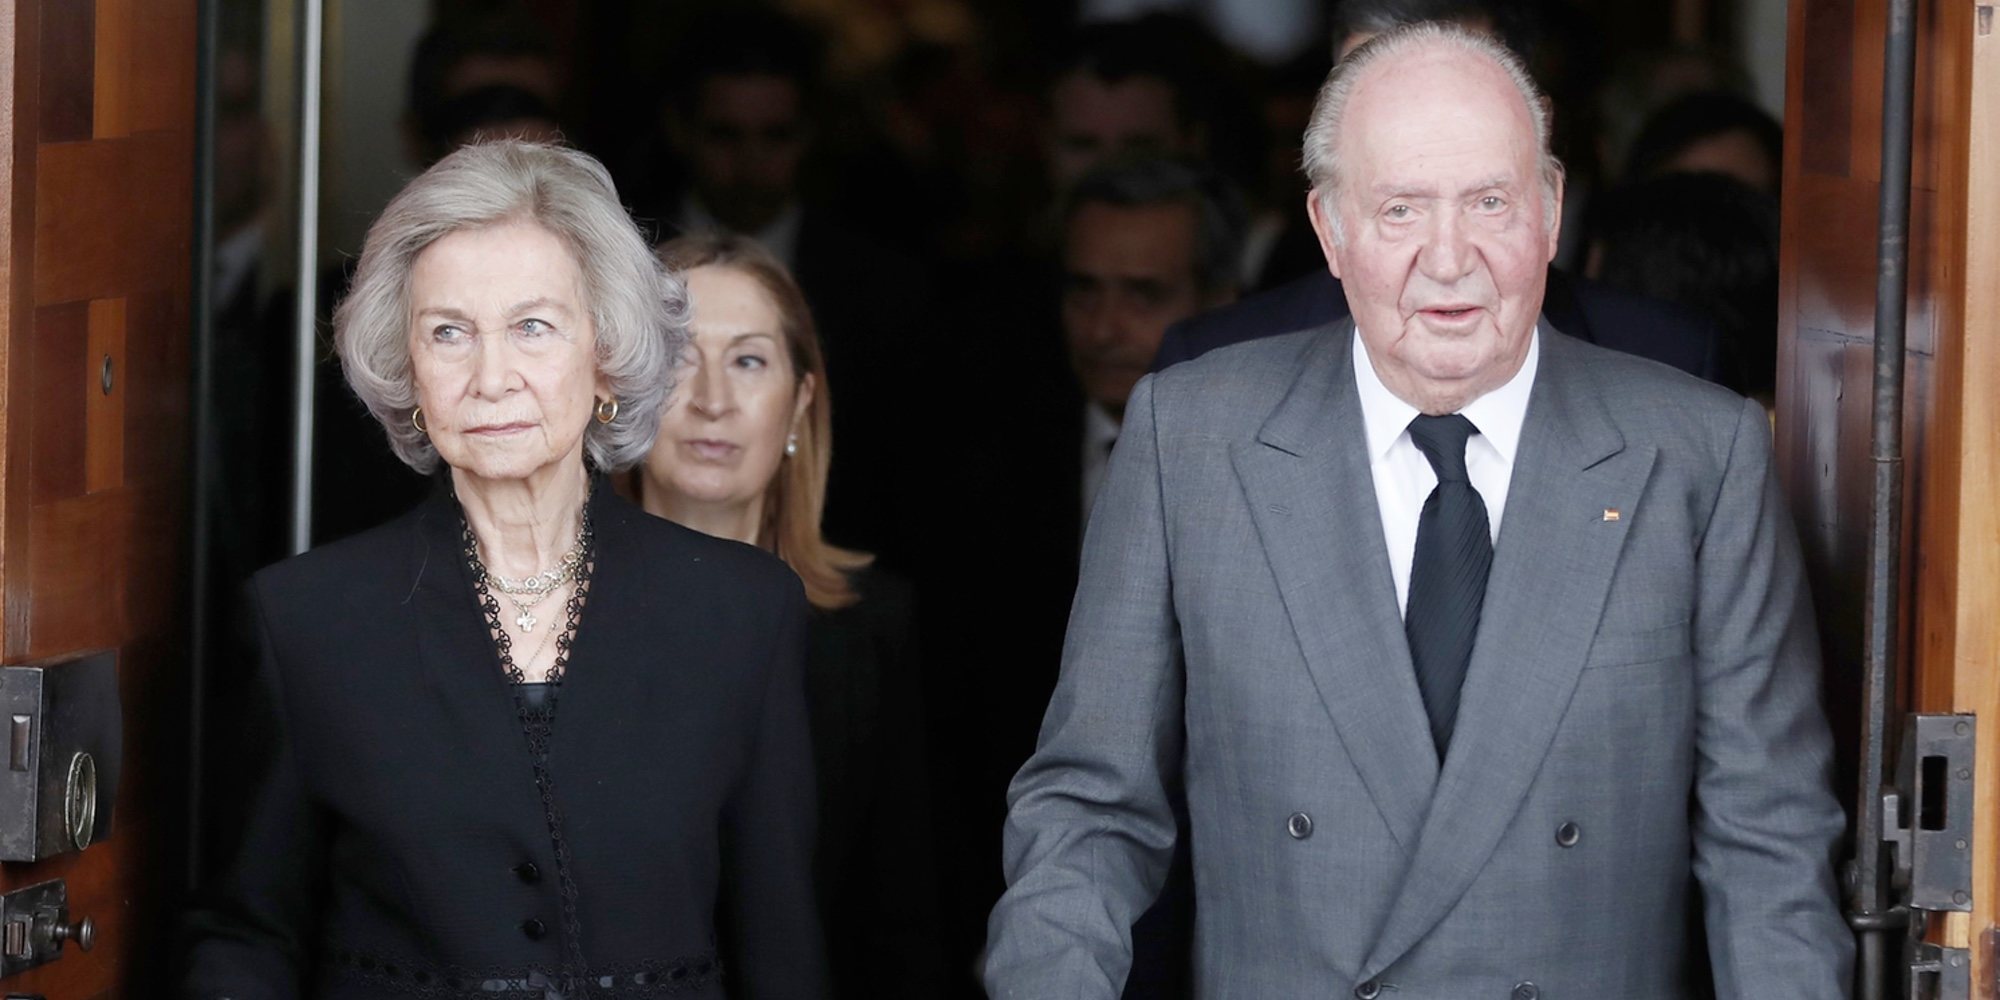 La posición de la Reina Sofía tras la retirada de los actos oficiales del Rey Juan Carlos